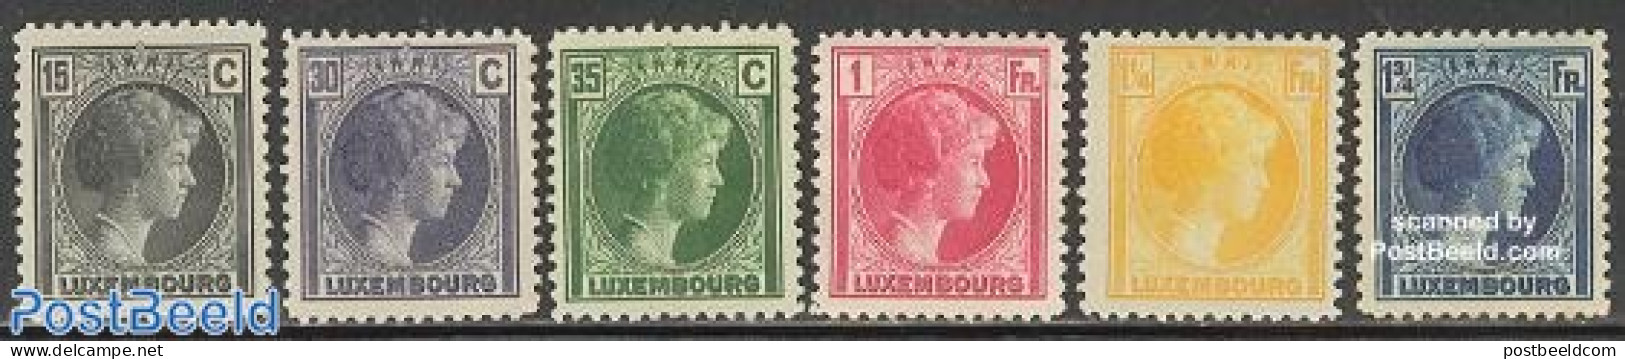 Luxemburg 1930 Definitives 6v, Unused (hinged) - Neufs